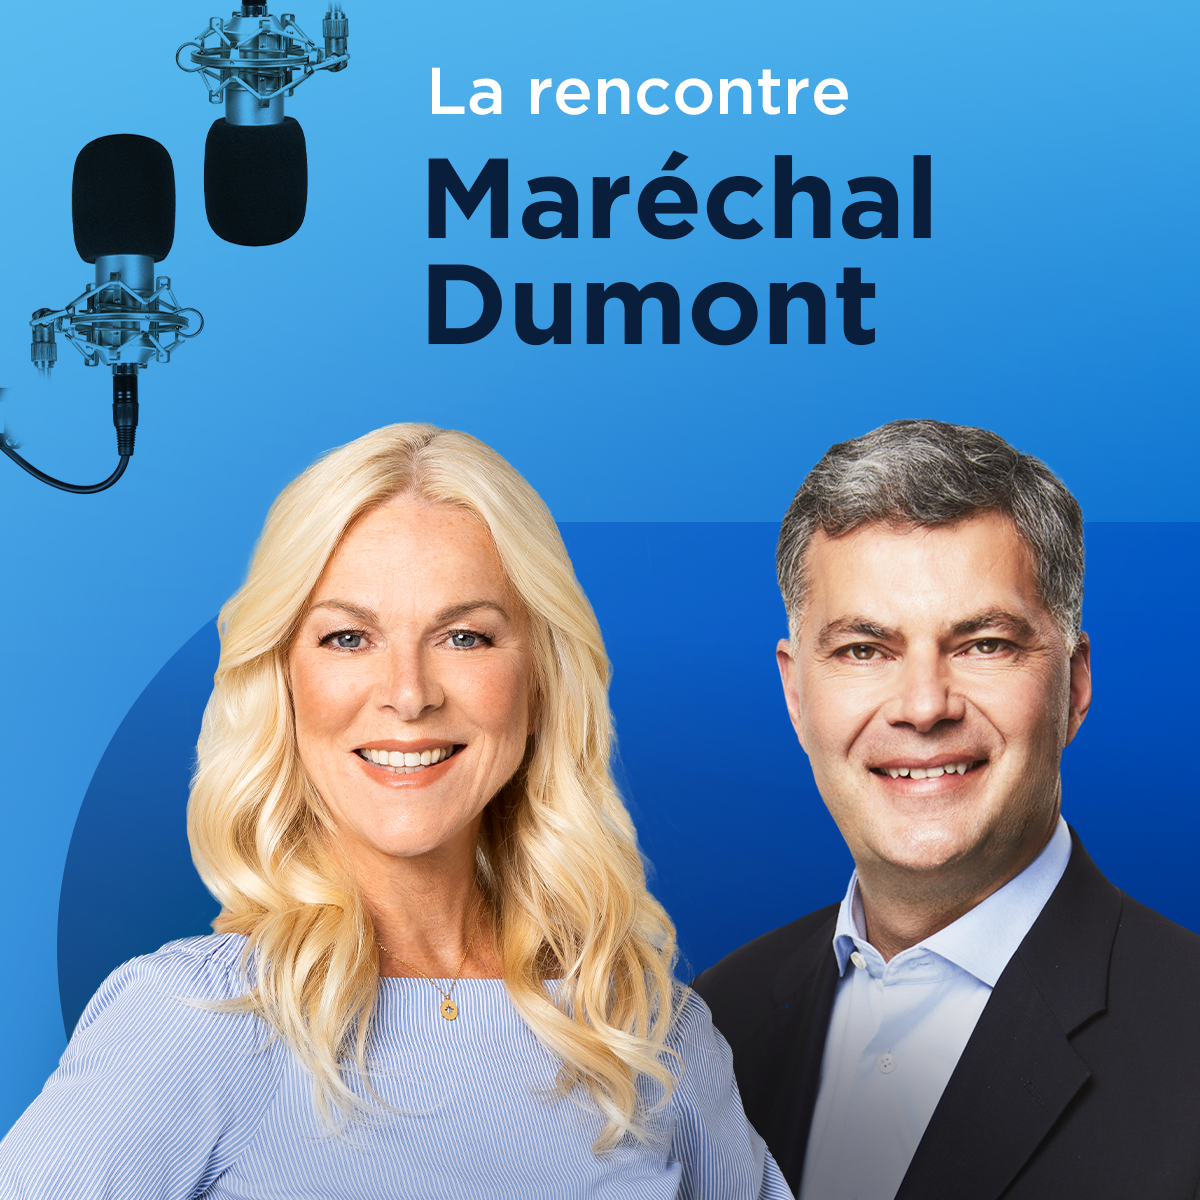 Réponse à Maria Mourani : «Il n’y a personne qui va vous arracher vos organes!», tranche Isabelle Maréchal